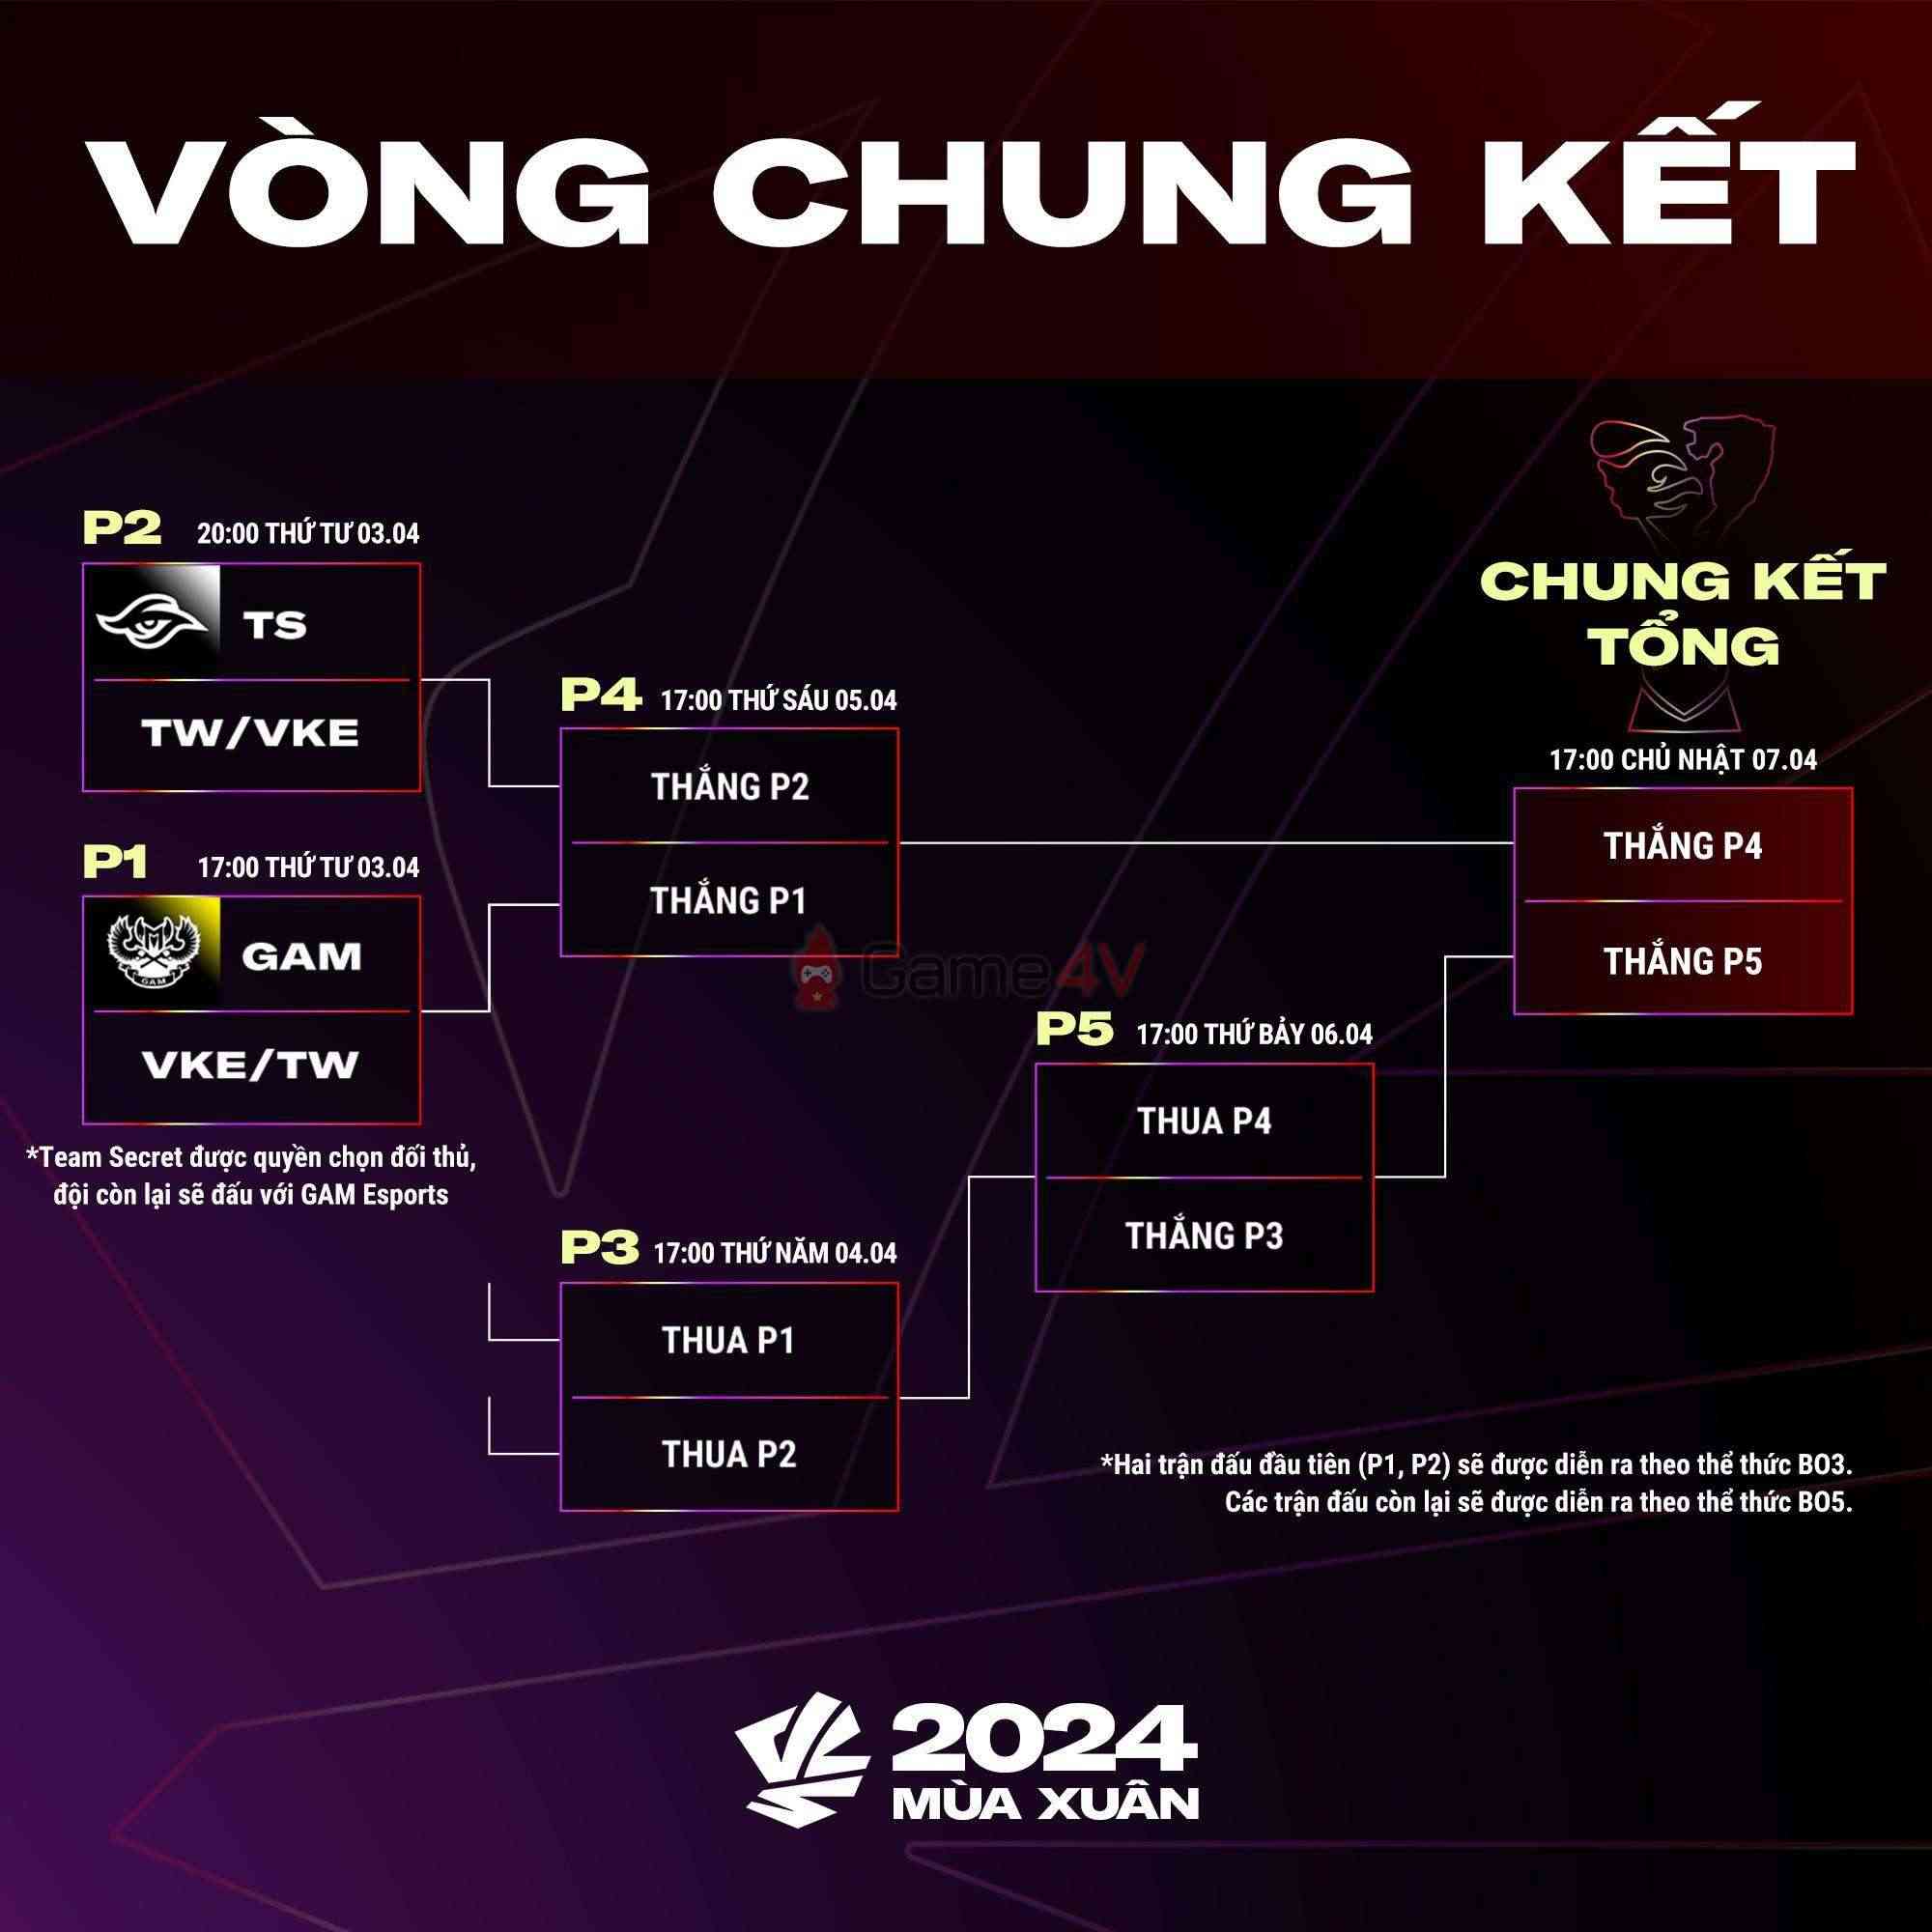 Bảng đấu và nhánh đấu của các đội tuyển tại Vòng Chung Kết VCS 2024 Mùa Xuân.